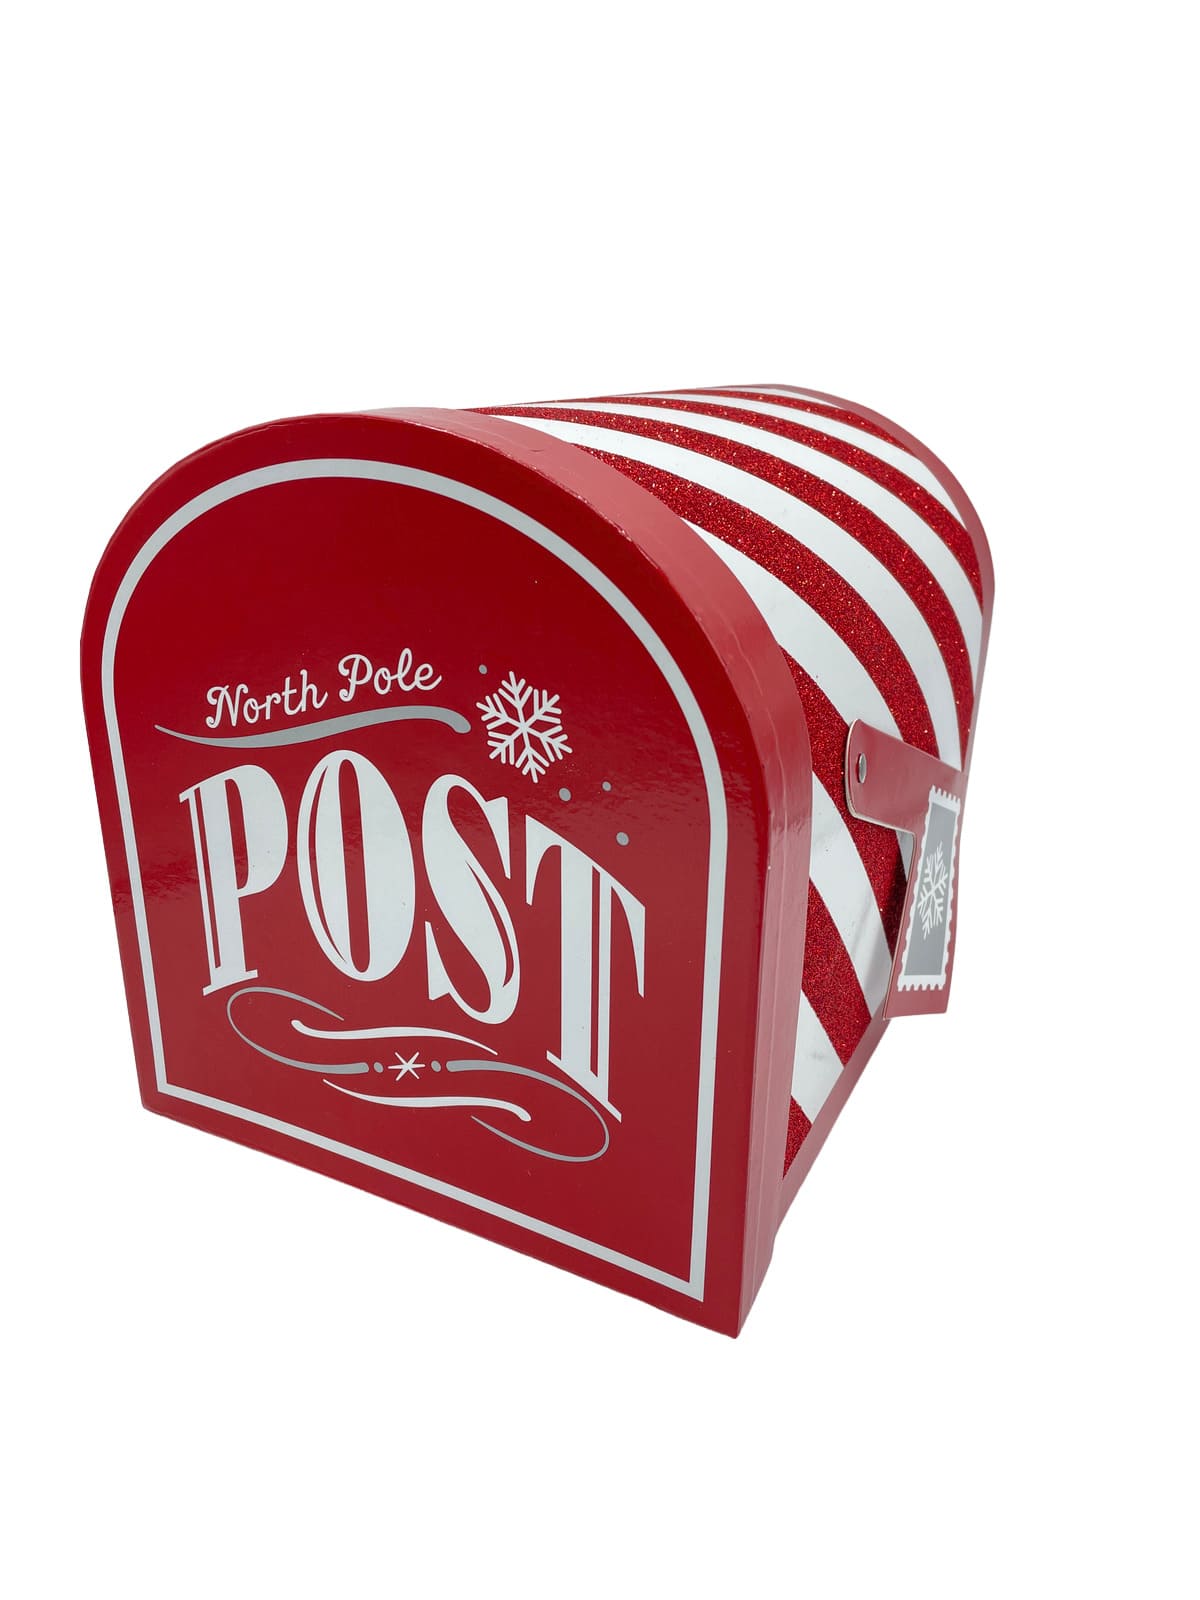 casella postale north pole